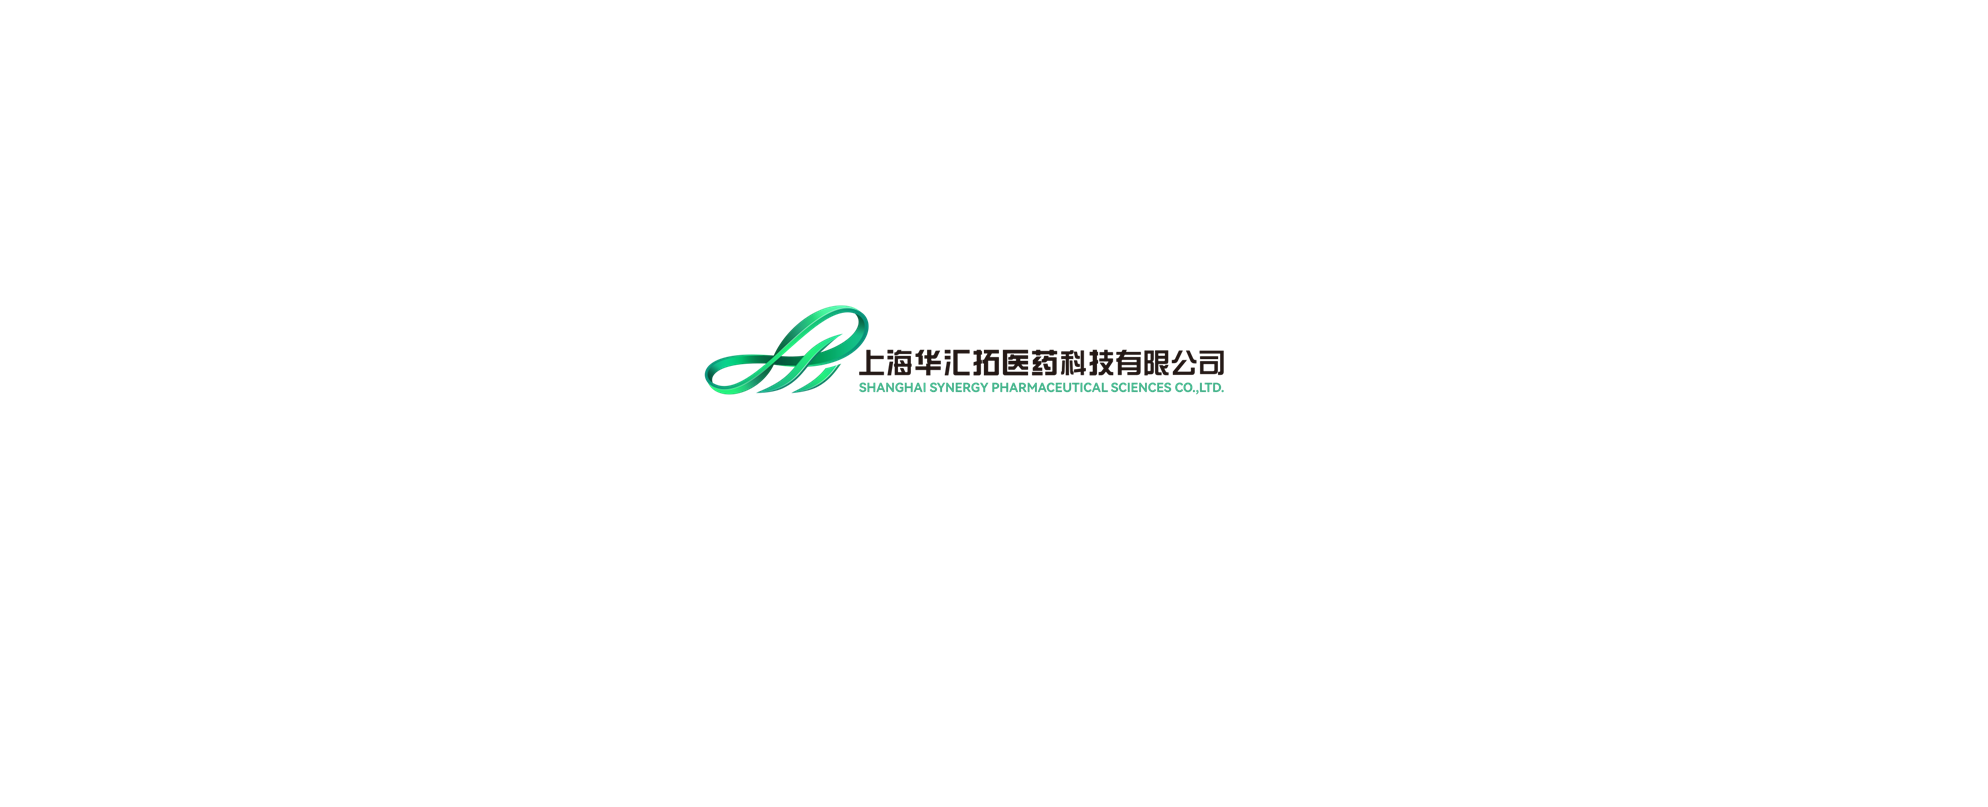 Shanghai Synergy Pharmaceutical Sciences Co., Ltd., A wholly owned subsidiary of Huahai Pharmaceutical Co., Ltd.